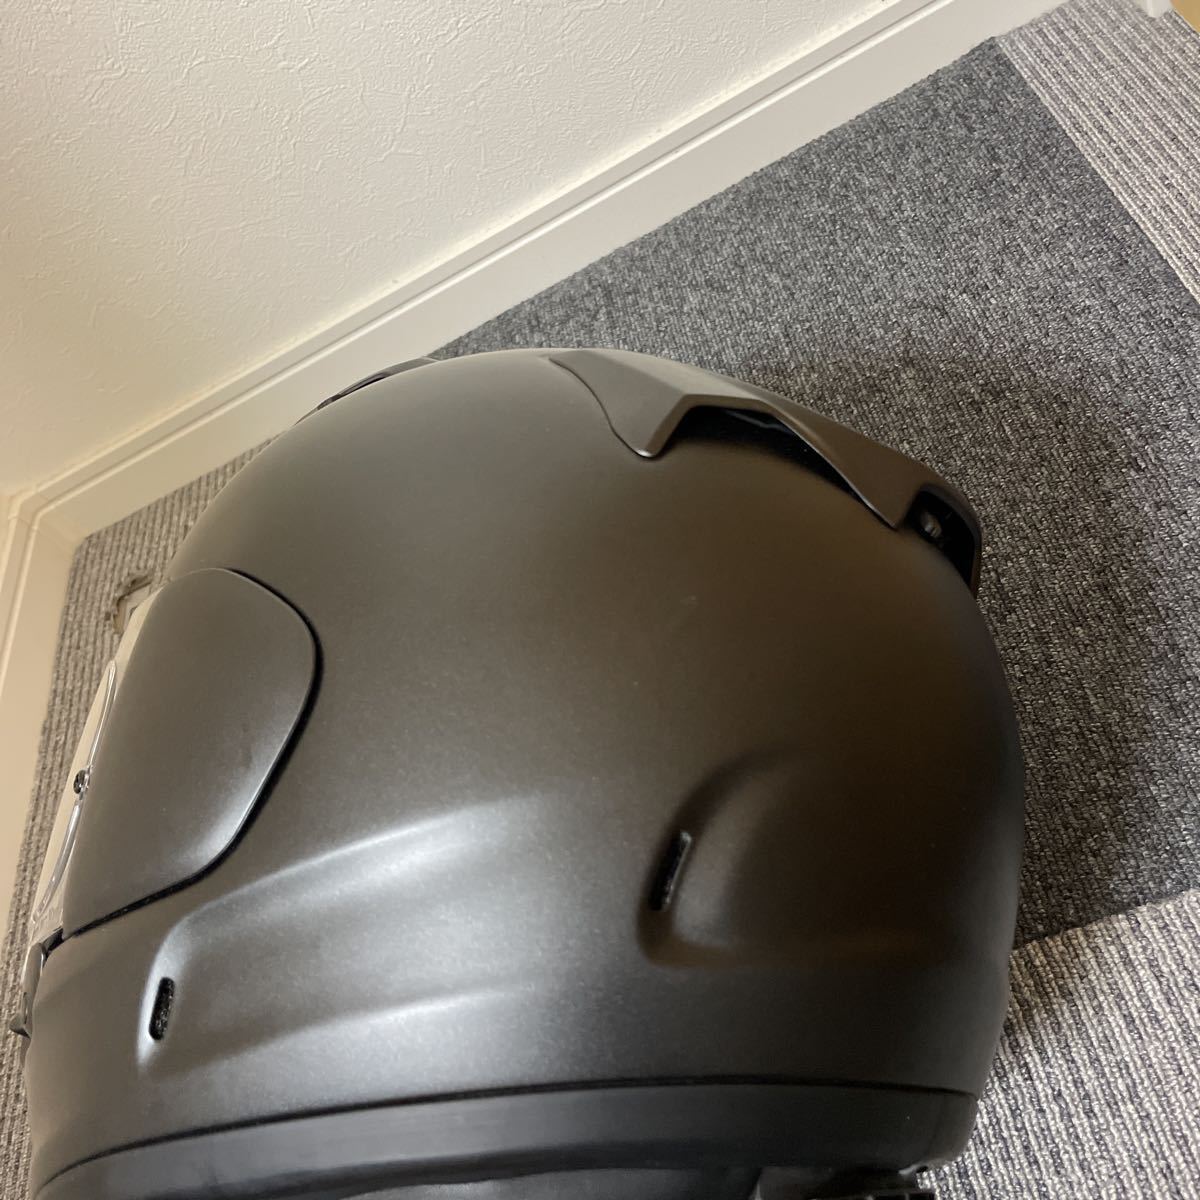 Arai アライ XD マットブラック フラットブラック 59〜60cm Lサイズ 2020年製 フルフェイスヘルメット ヘルメット バイク (47)_画像3